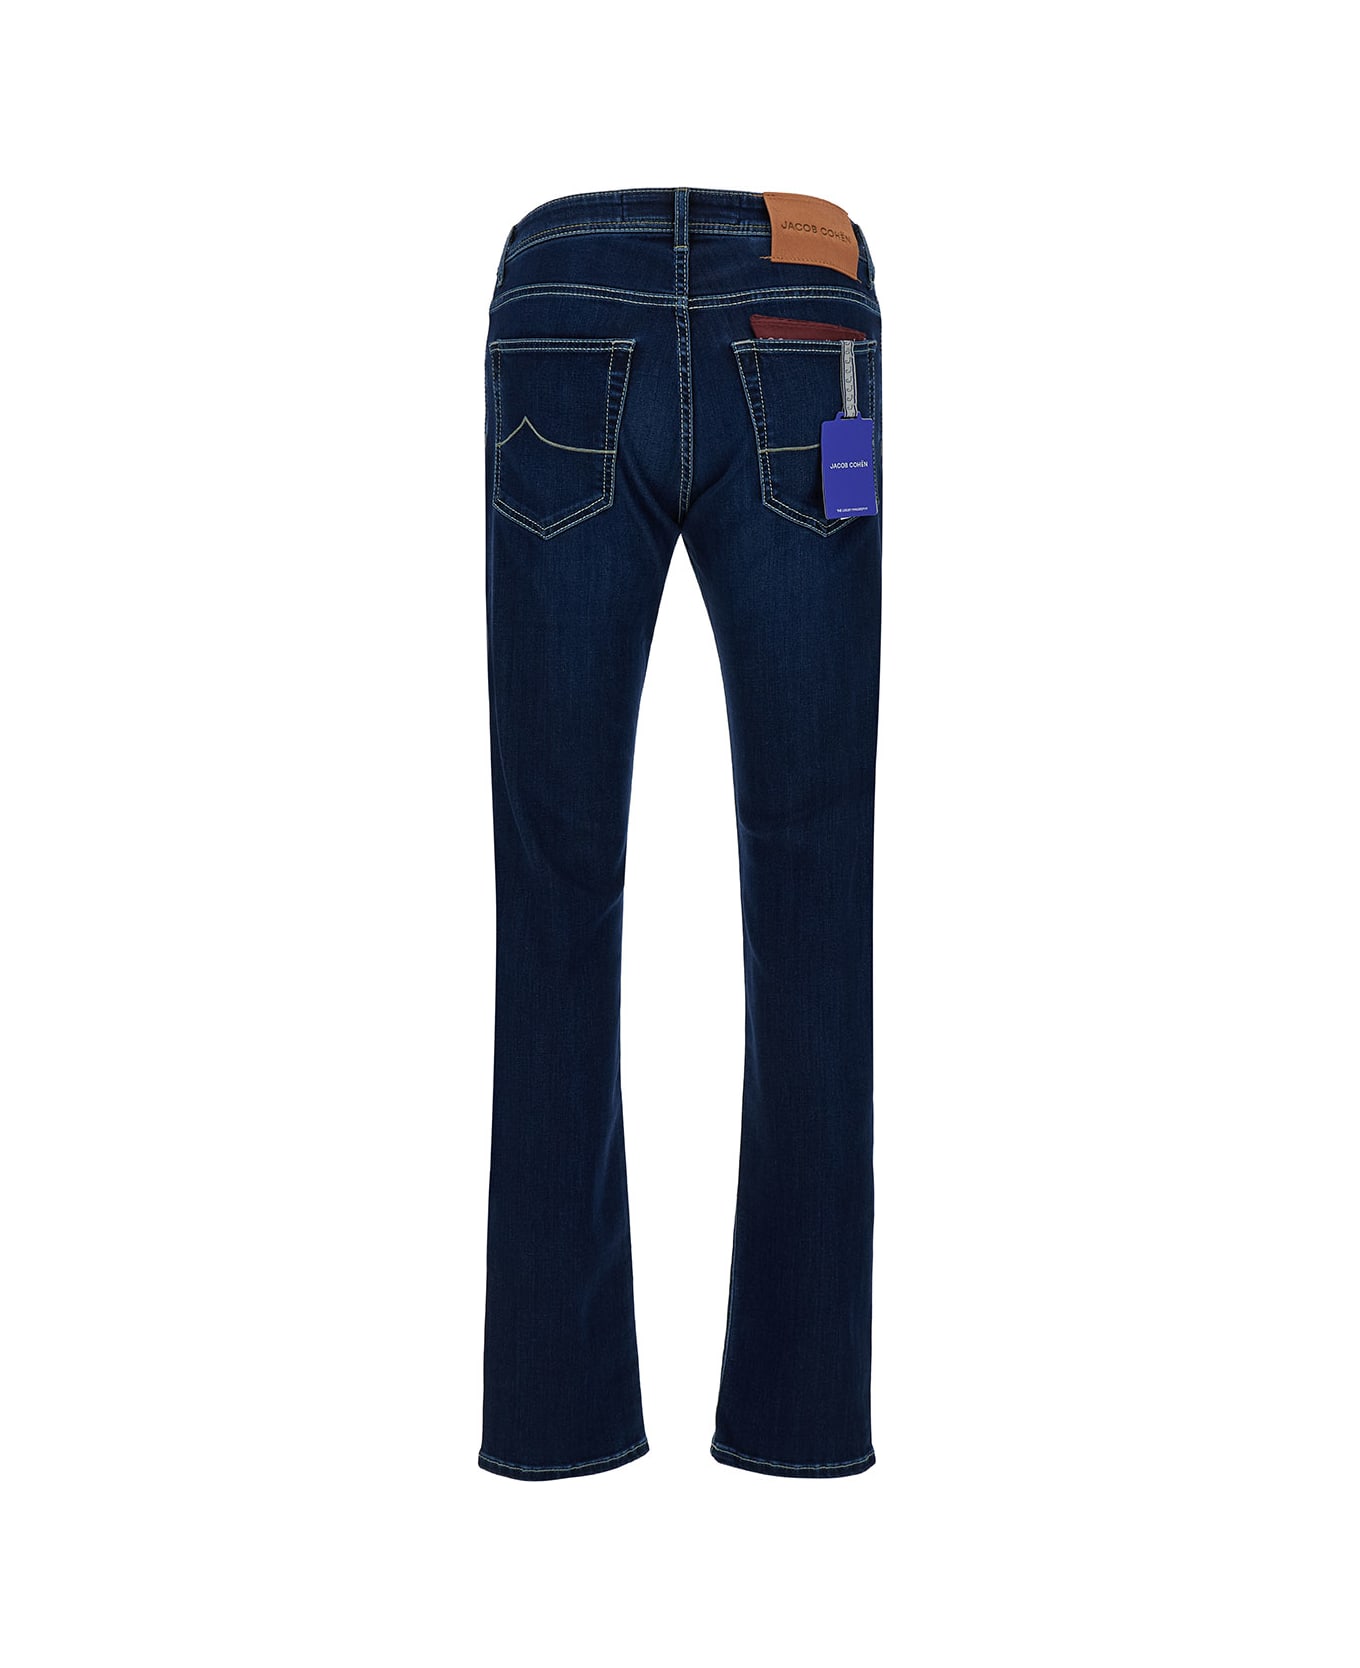 Jacob Cohen Low Waist Blue Slim Jeans In Cotton Blend Man - Blu